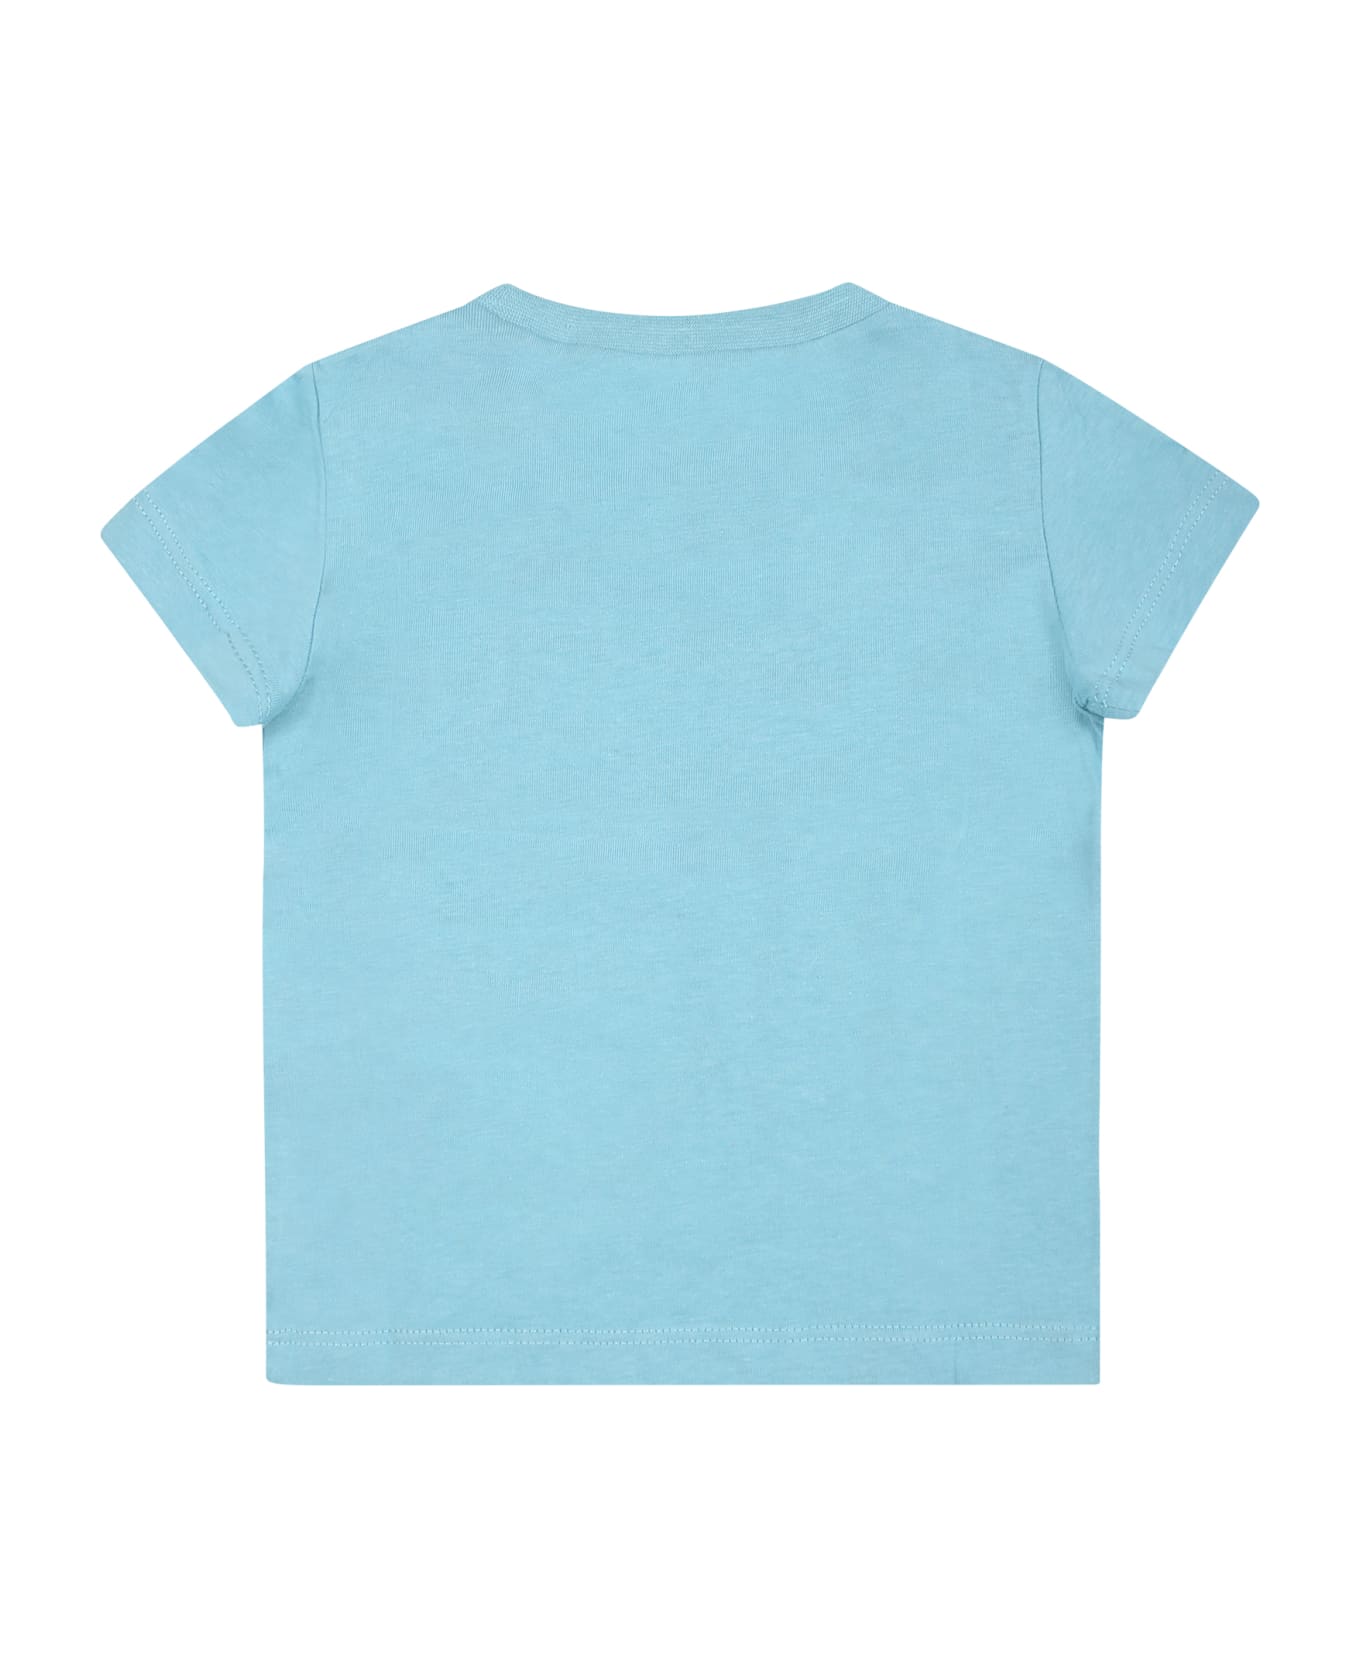 Levi's Light Blue T-shirt For Babykids With Logo - Light Blue